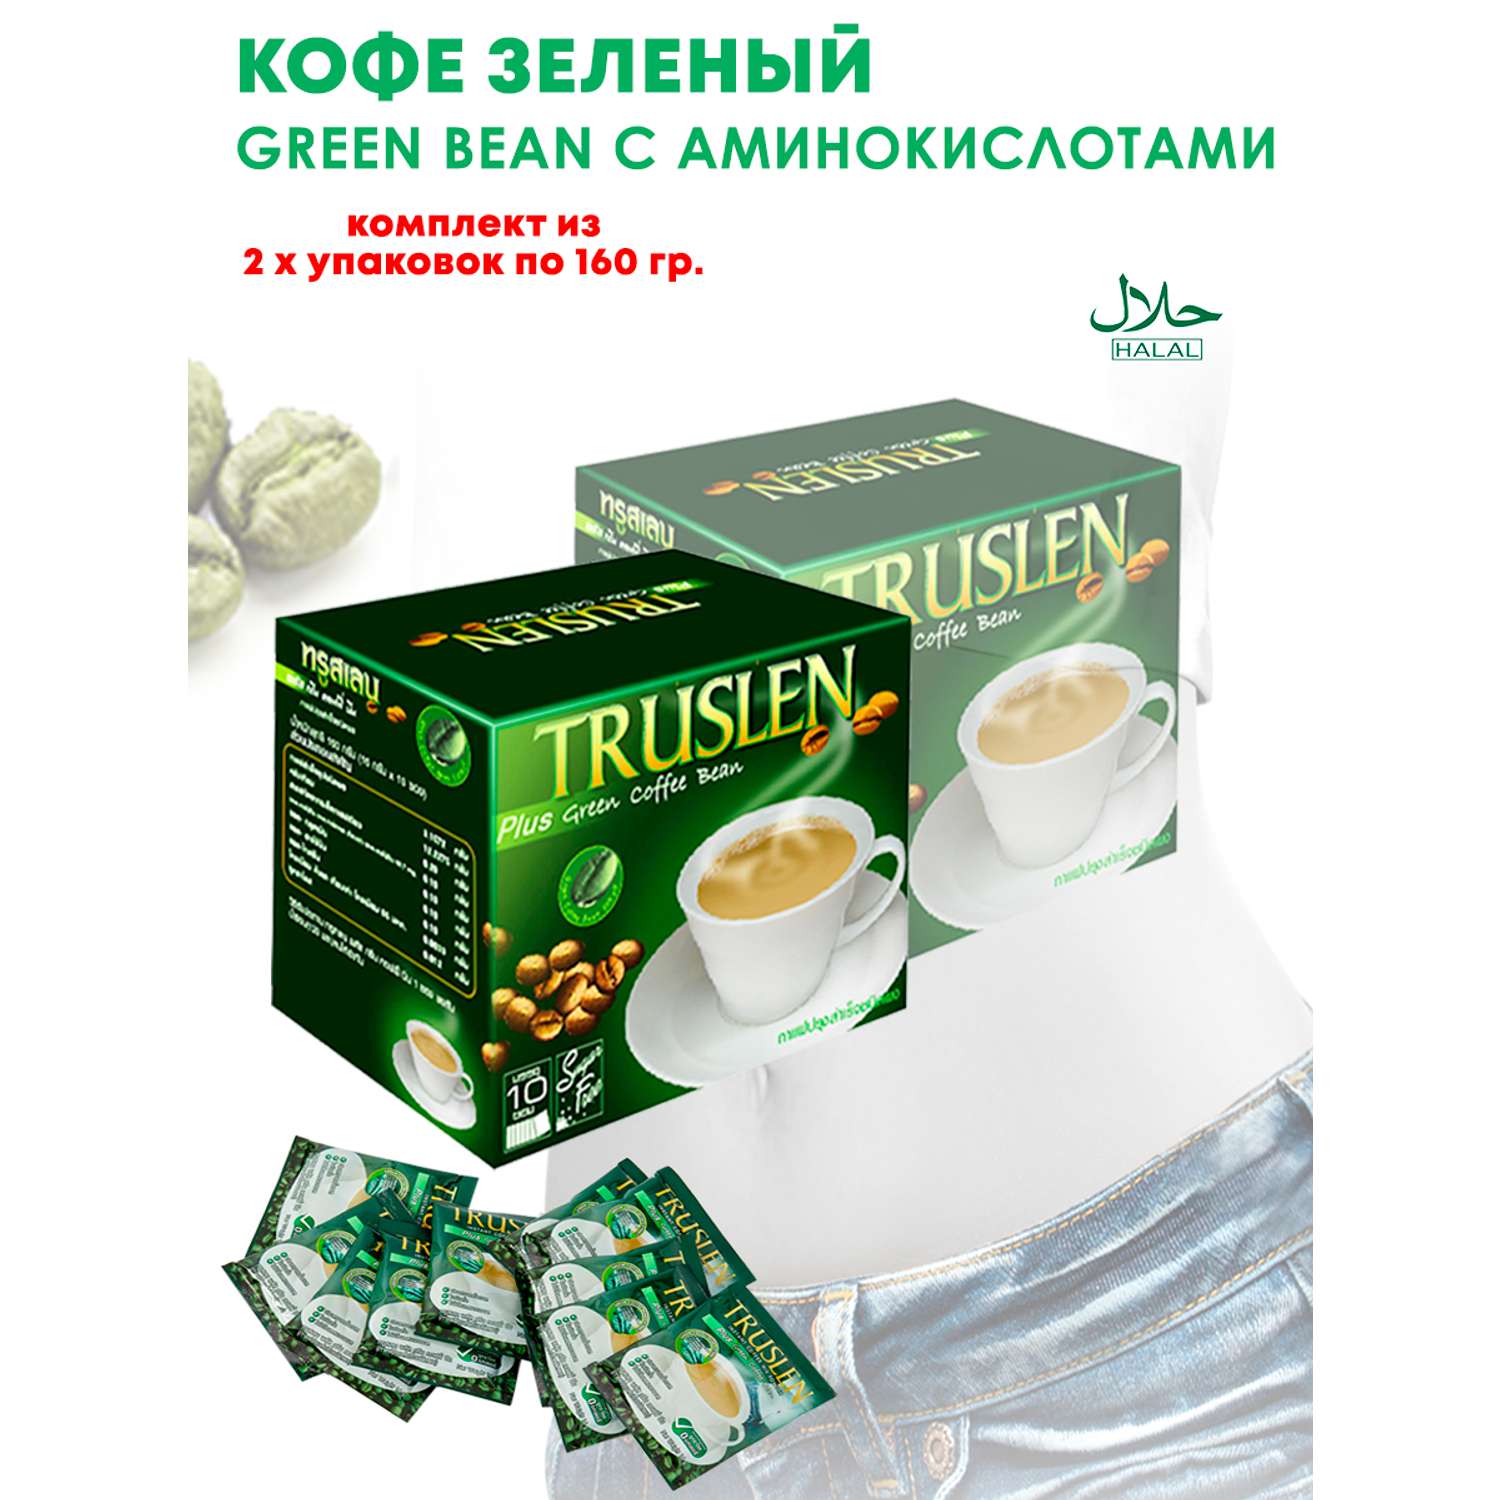 Кофе Зеленый для Похудения Truslen c Аминокислотами 2 упаковки - фото 2